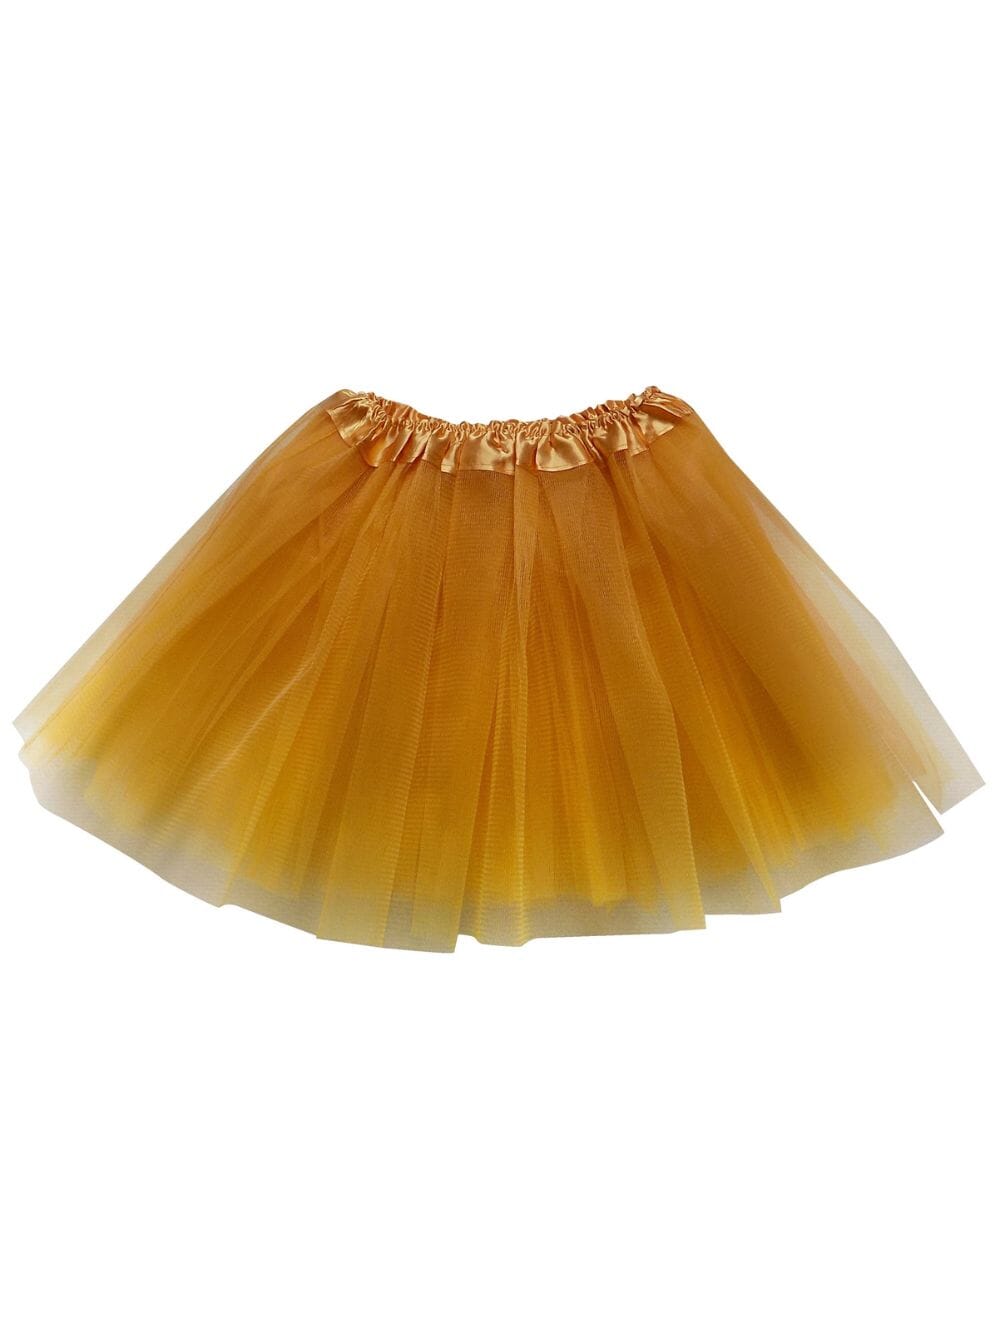 Goldenrod Tutu Skirt - Kids Size 3-Layer Tulle Basic Ballet Dance Costume Tutus for Girls - Sydney So Sweet